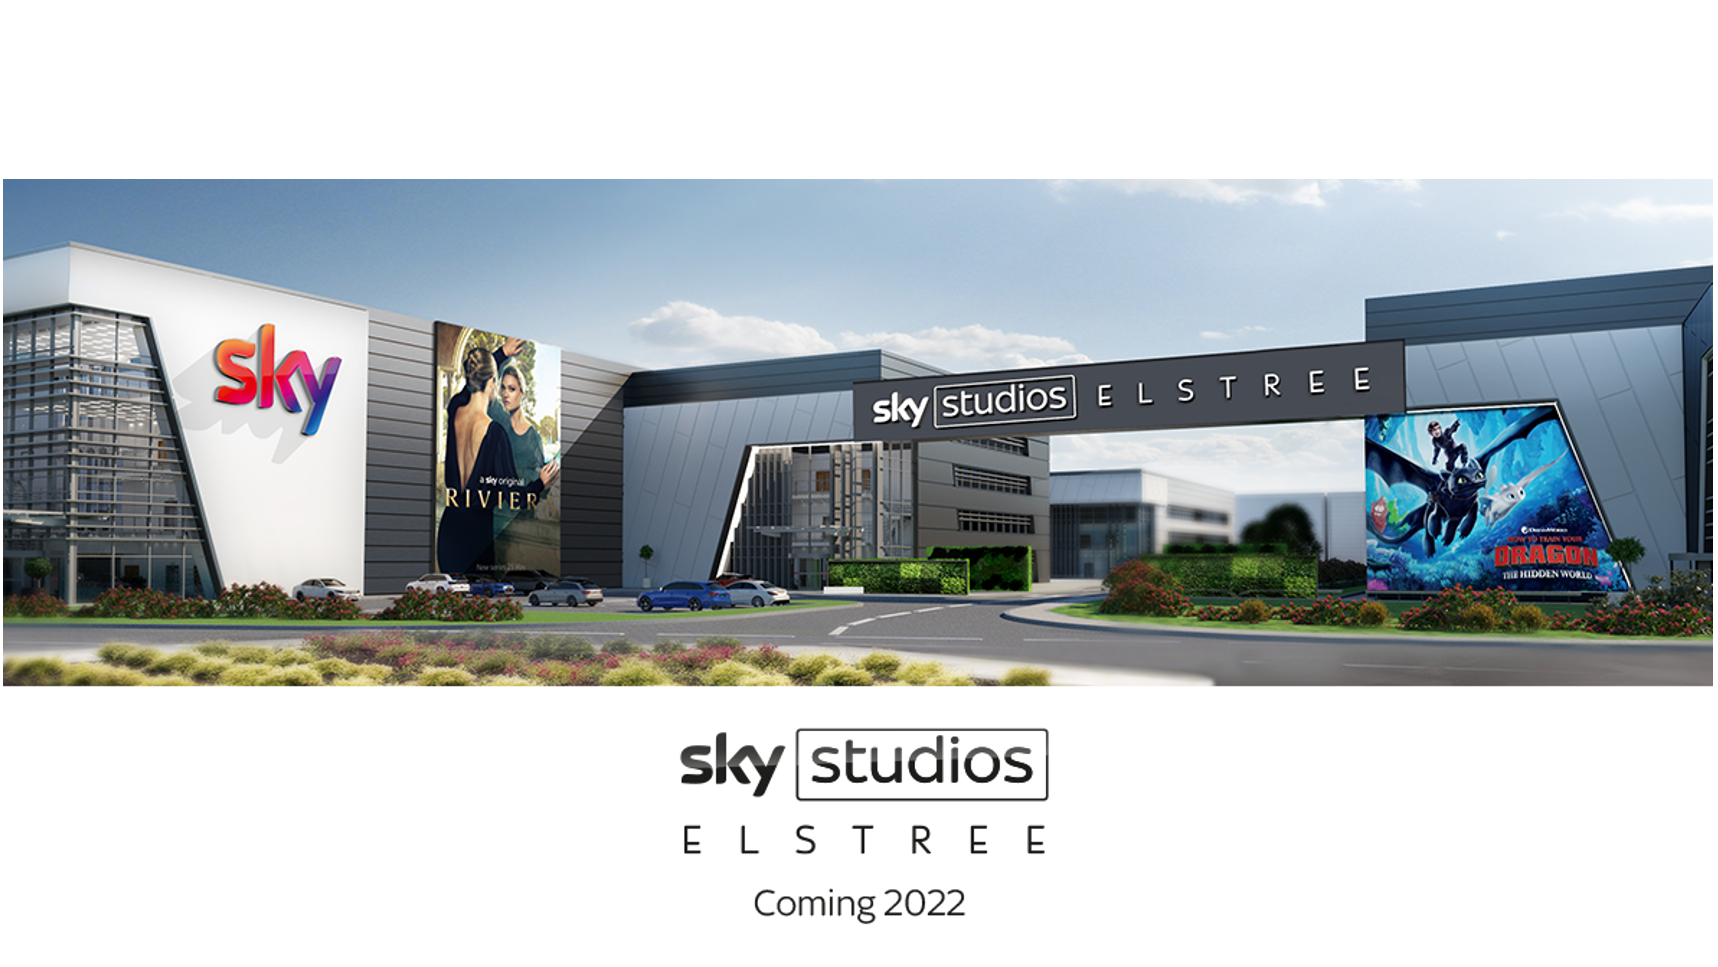 Sky Studio – Artist's Impression